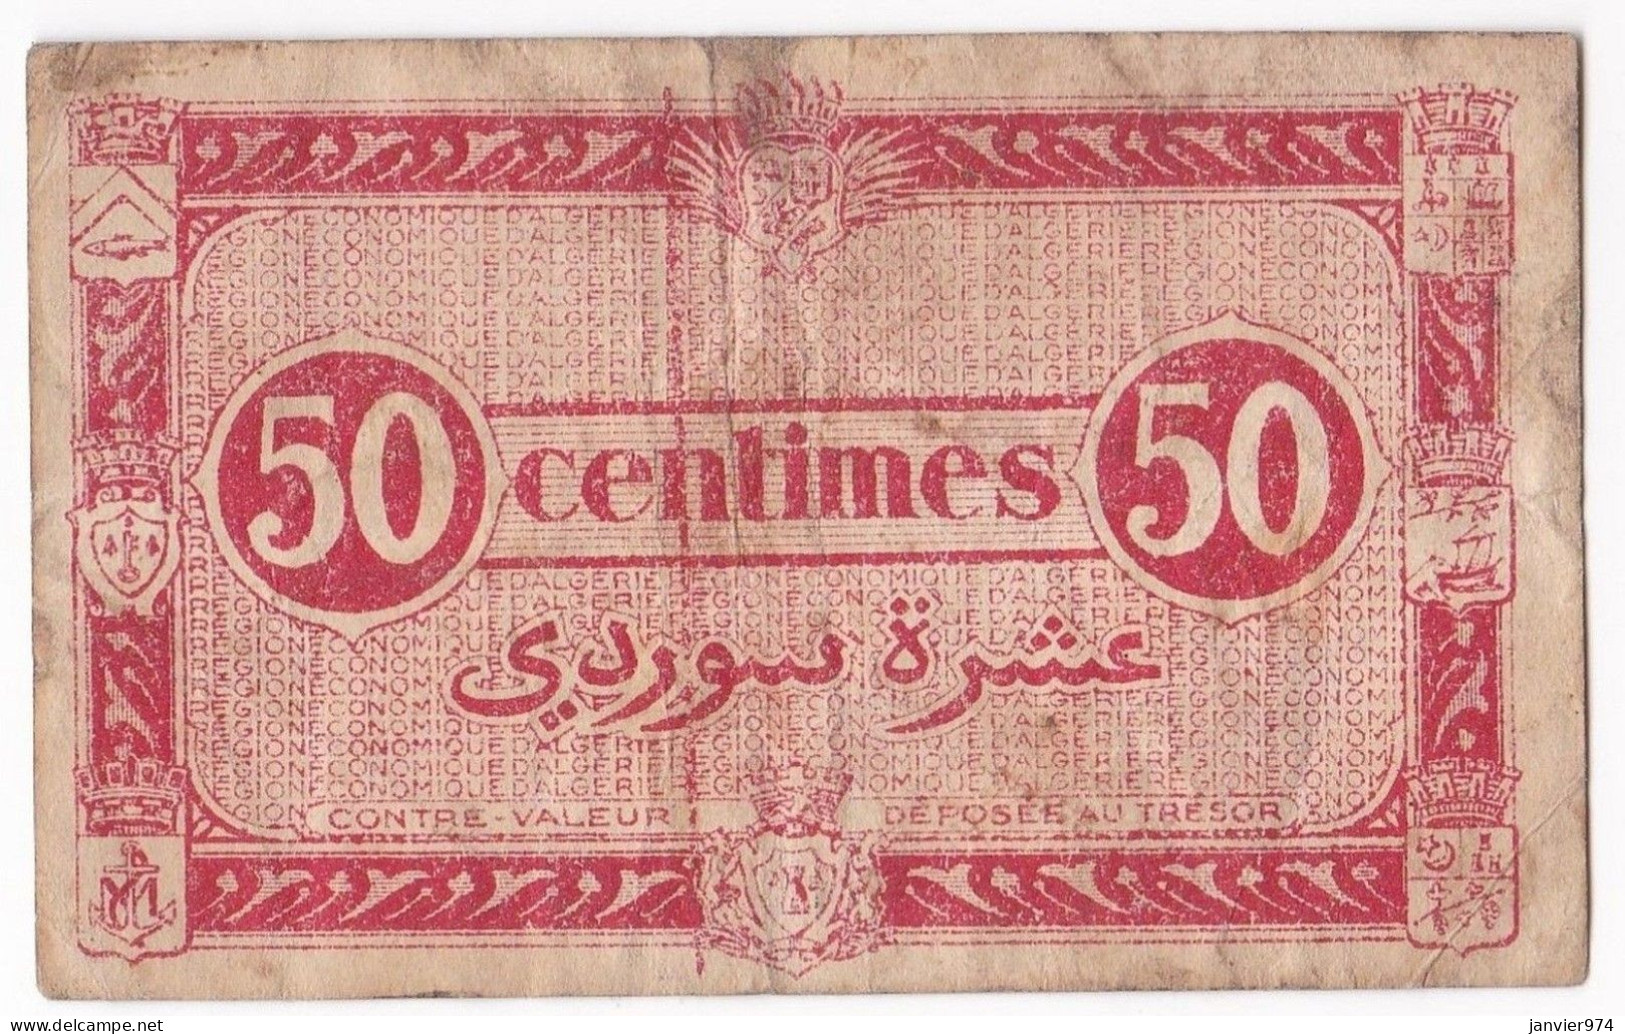 Région Economique D’Algérie 50 Centimes 1944, 2e T Serie I 2 N° 876572, Billet Colonial Circulé - Algérie